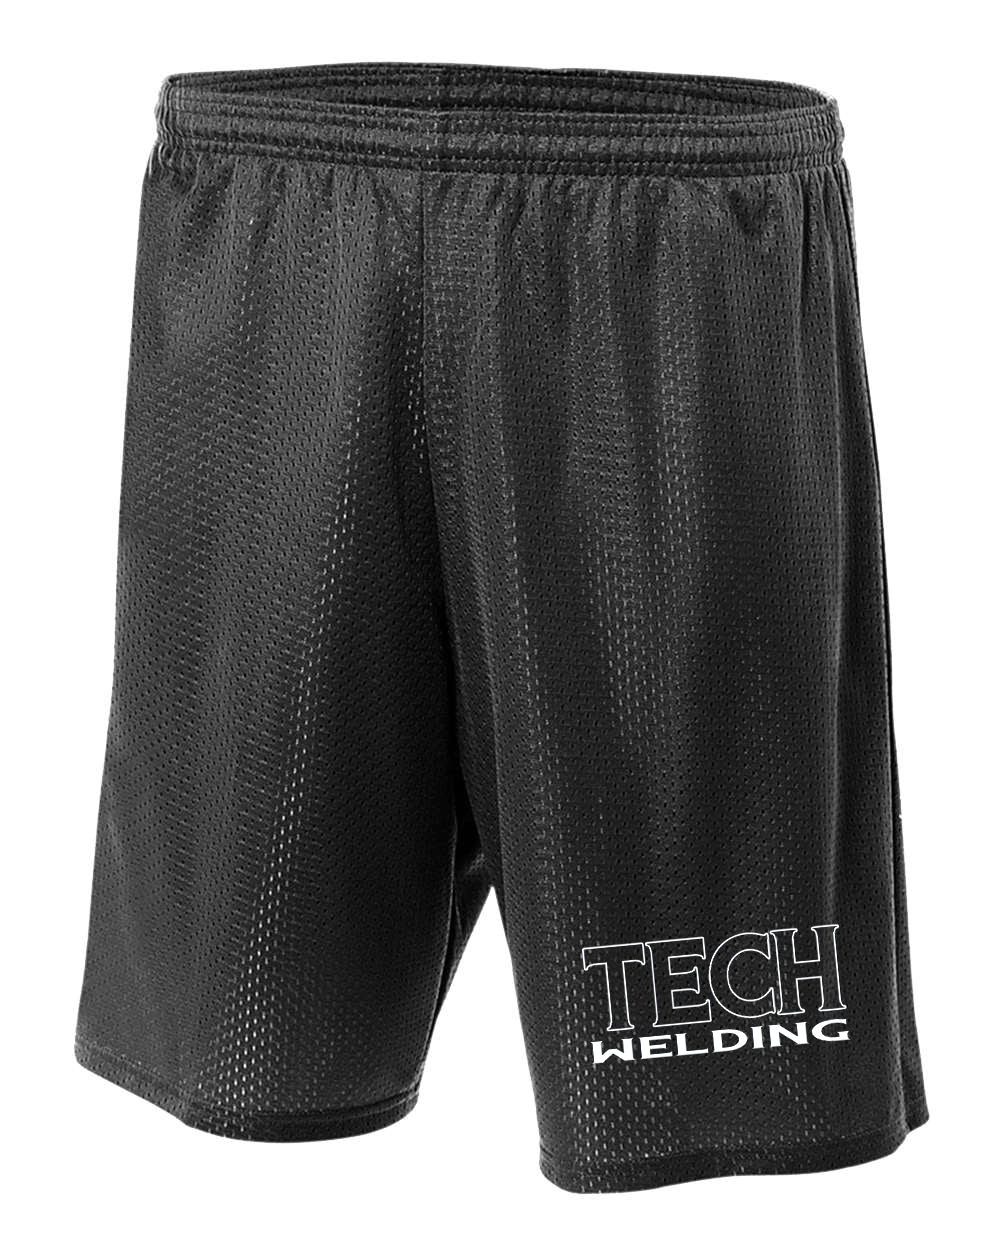 Sussex Tech Welding Design 3 Mesh Shorts